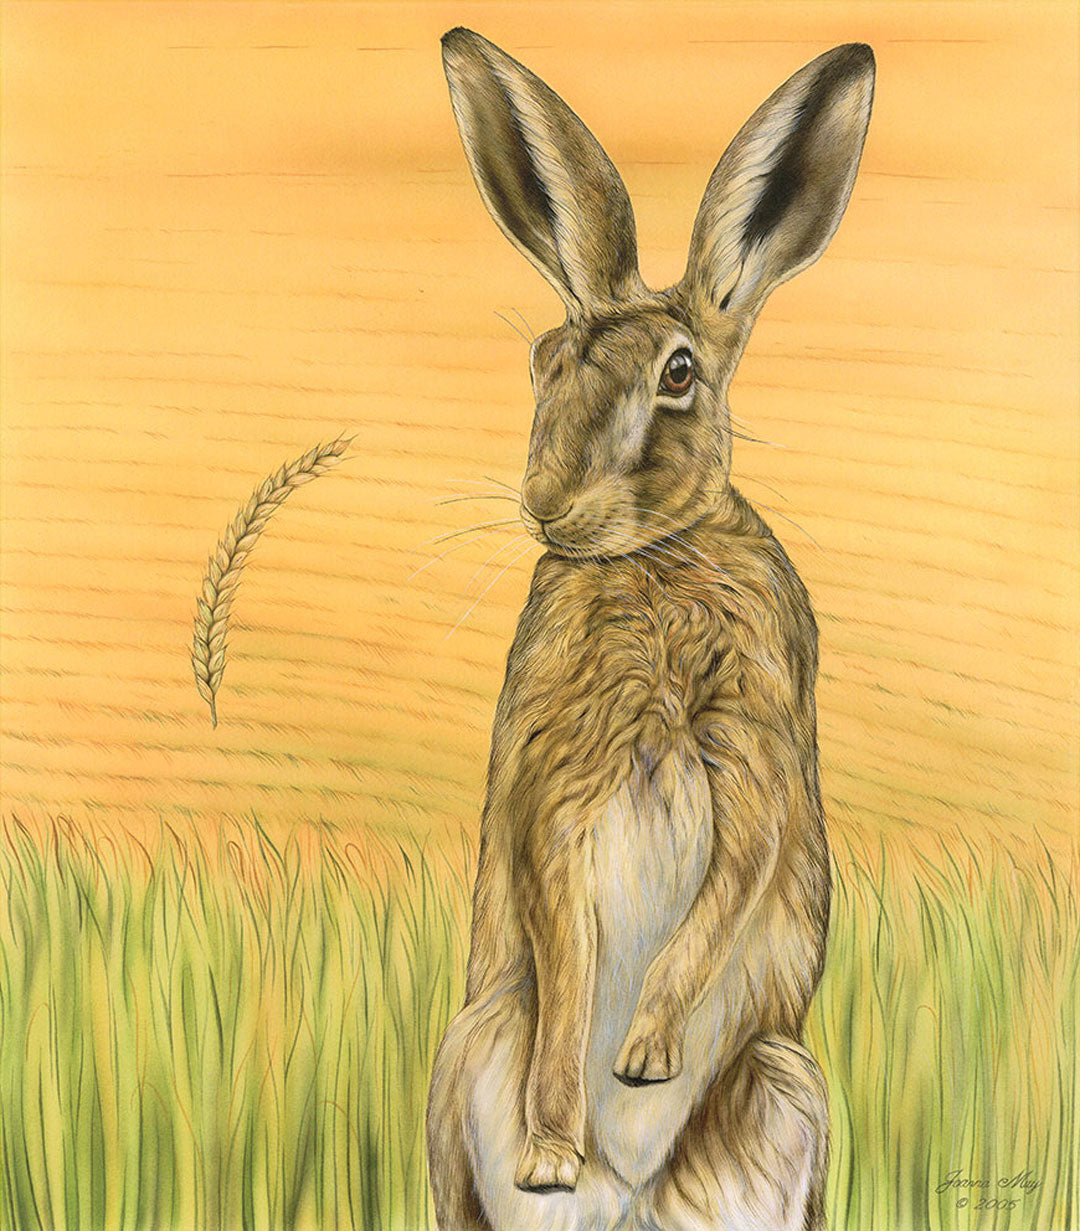 Cornucopia hare with a field backdrop